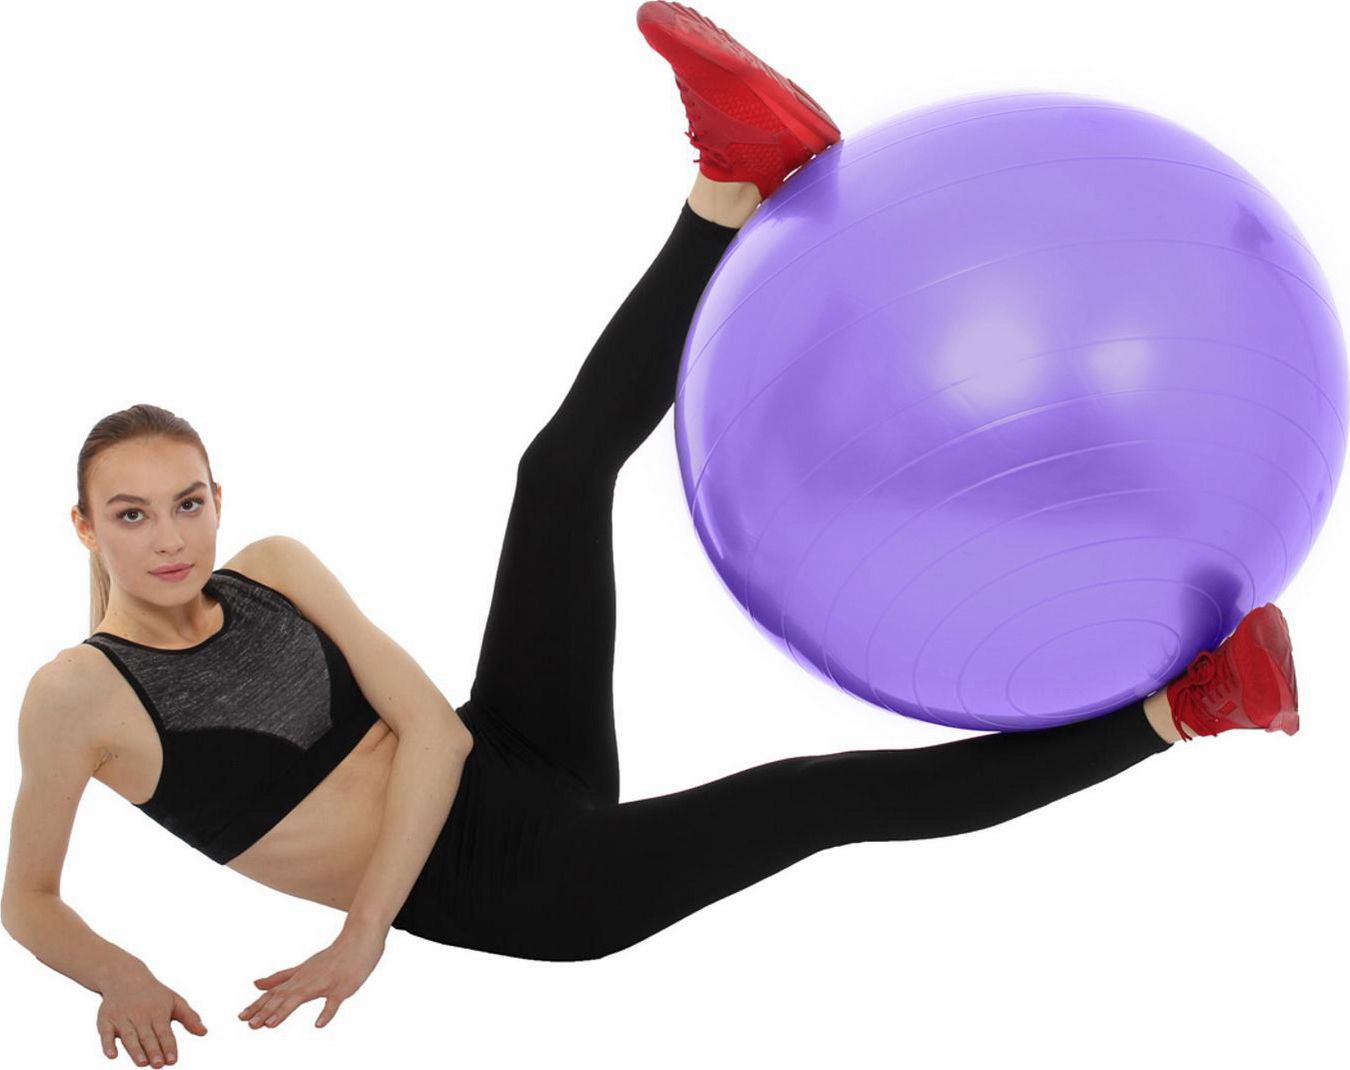 Мяч для фитнеса «ФИТБОЛ-75» Bradex, фиолетовый